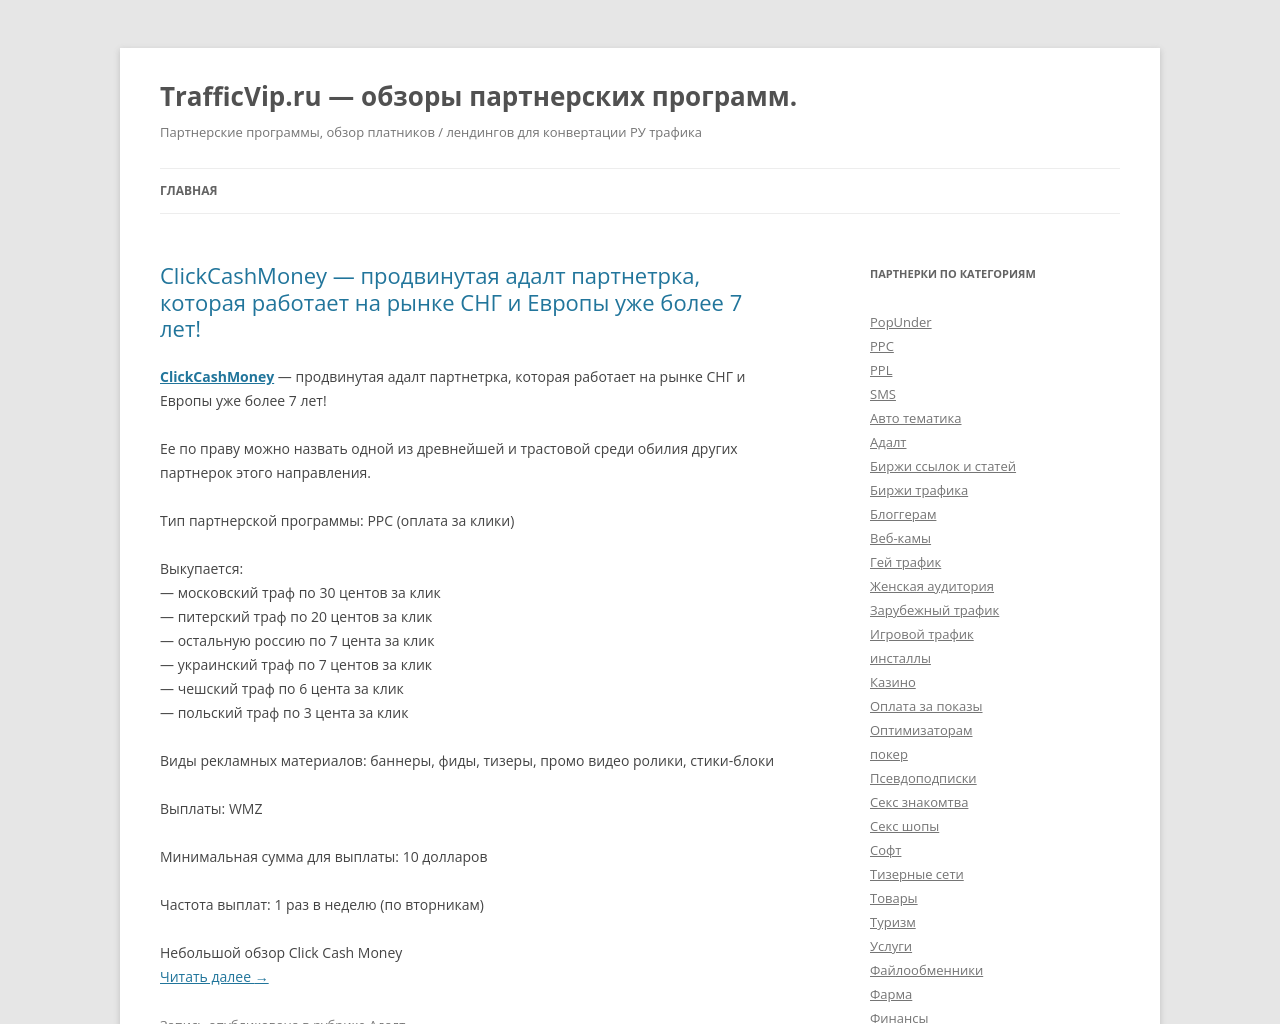 trafficvip.ru